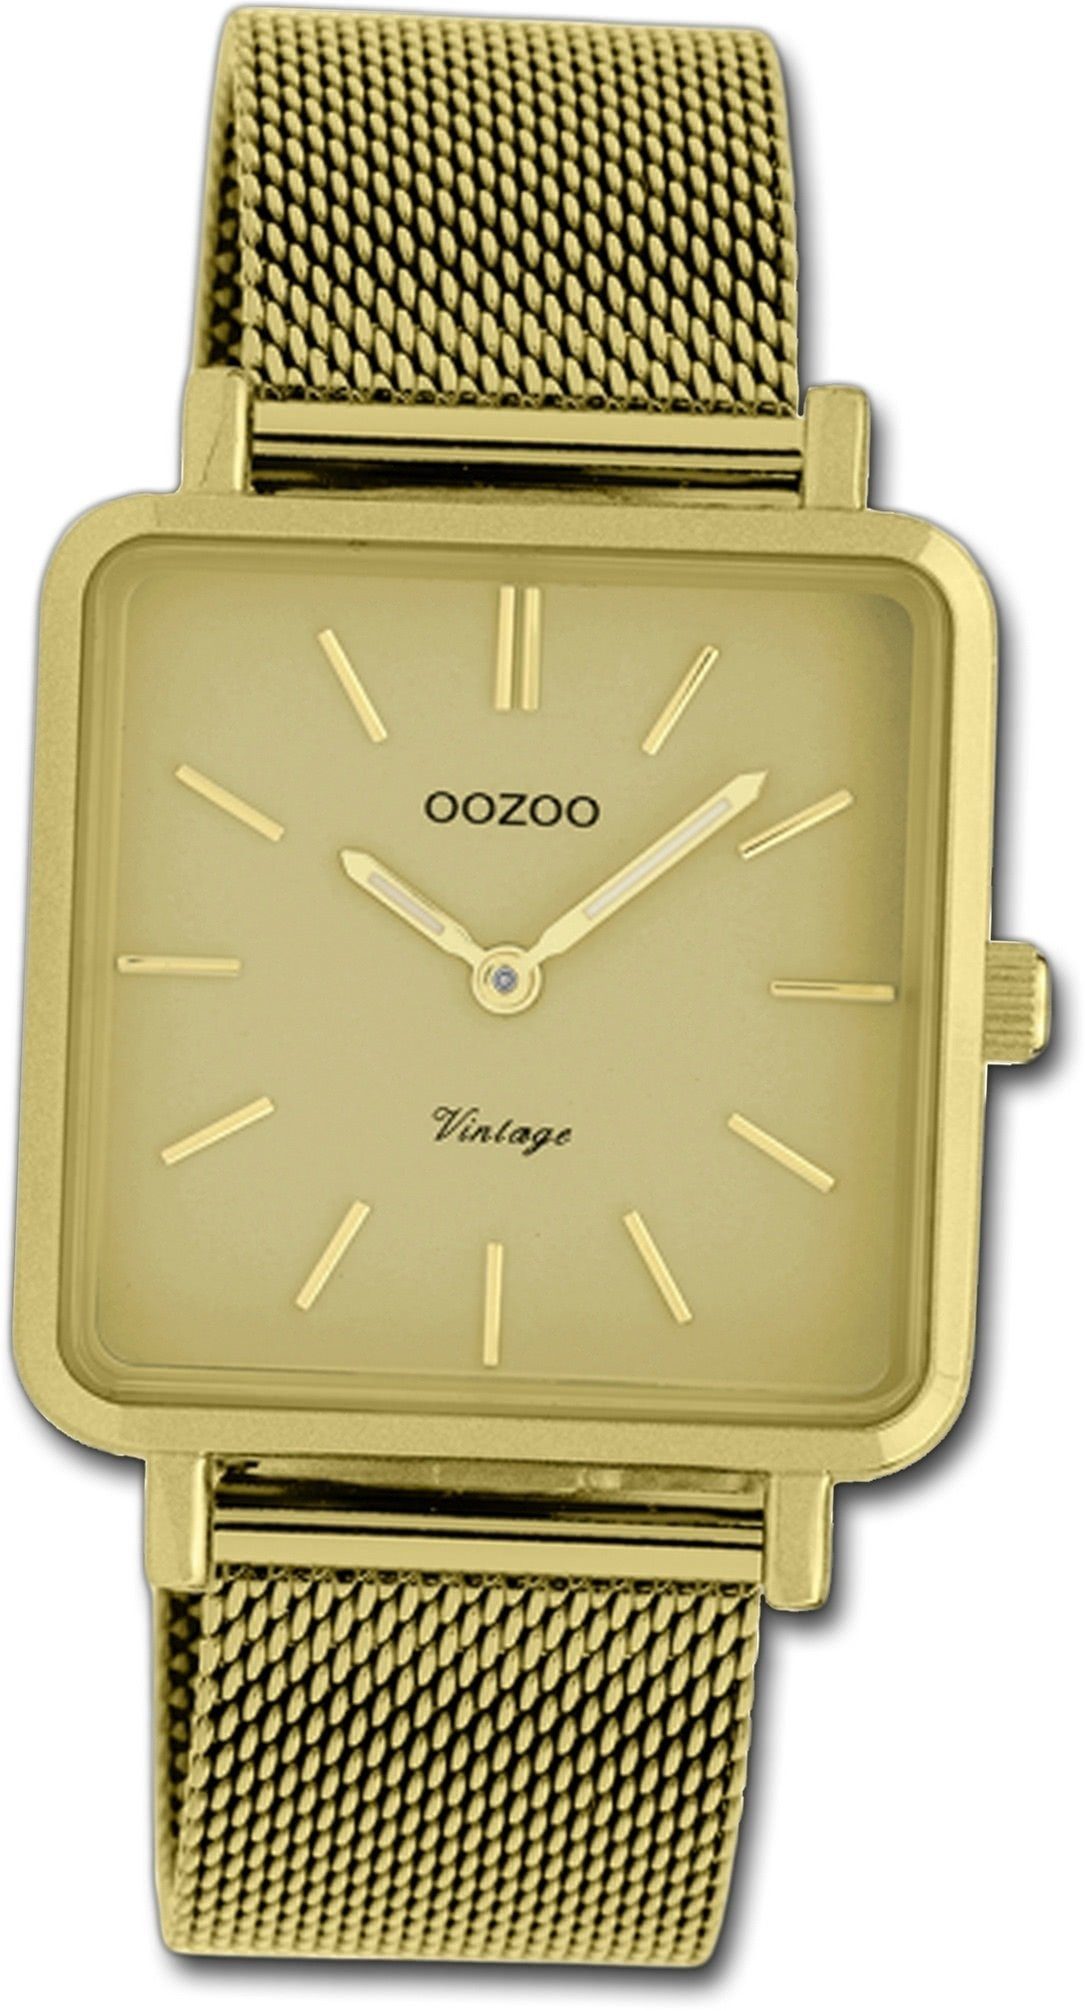 OOZOO Quarzuhr Oozoo gold, C20010, Edelstahlarmband klein Damen eckiges Damenuhr 29mm) Uhr (ca. Edelstahl Gehäuse